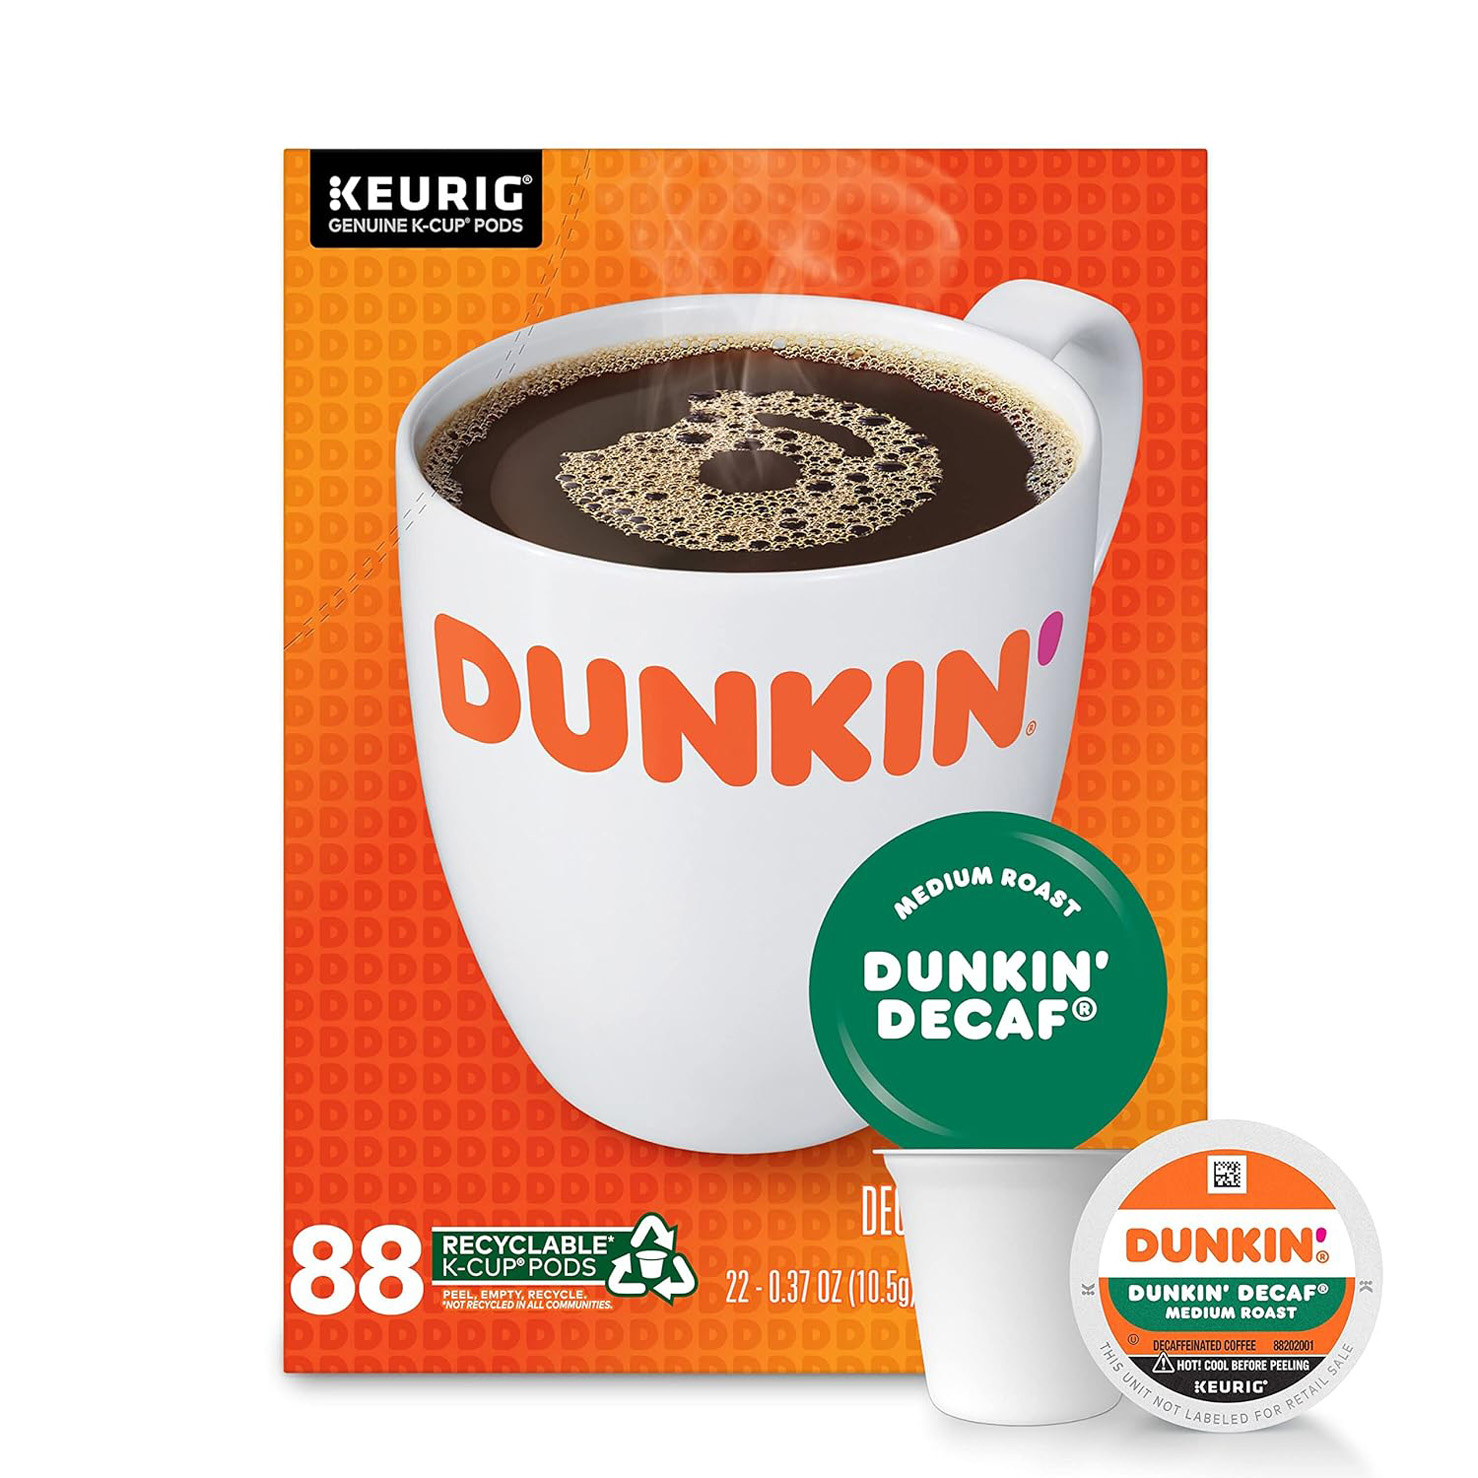 Dunkin’ Decaf Medium Roast Coffee, 88 Keurig K-Cup Pods